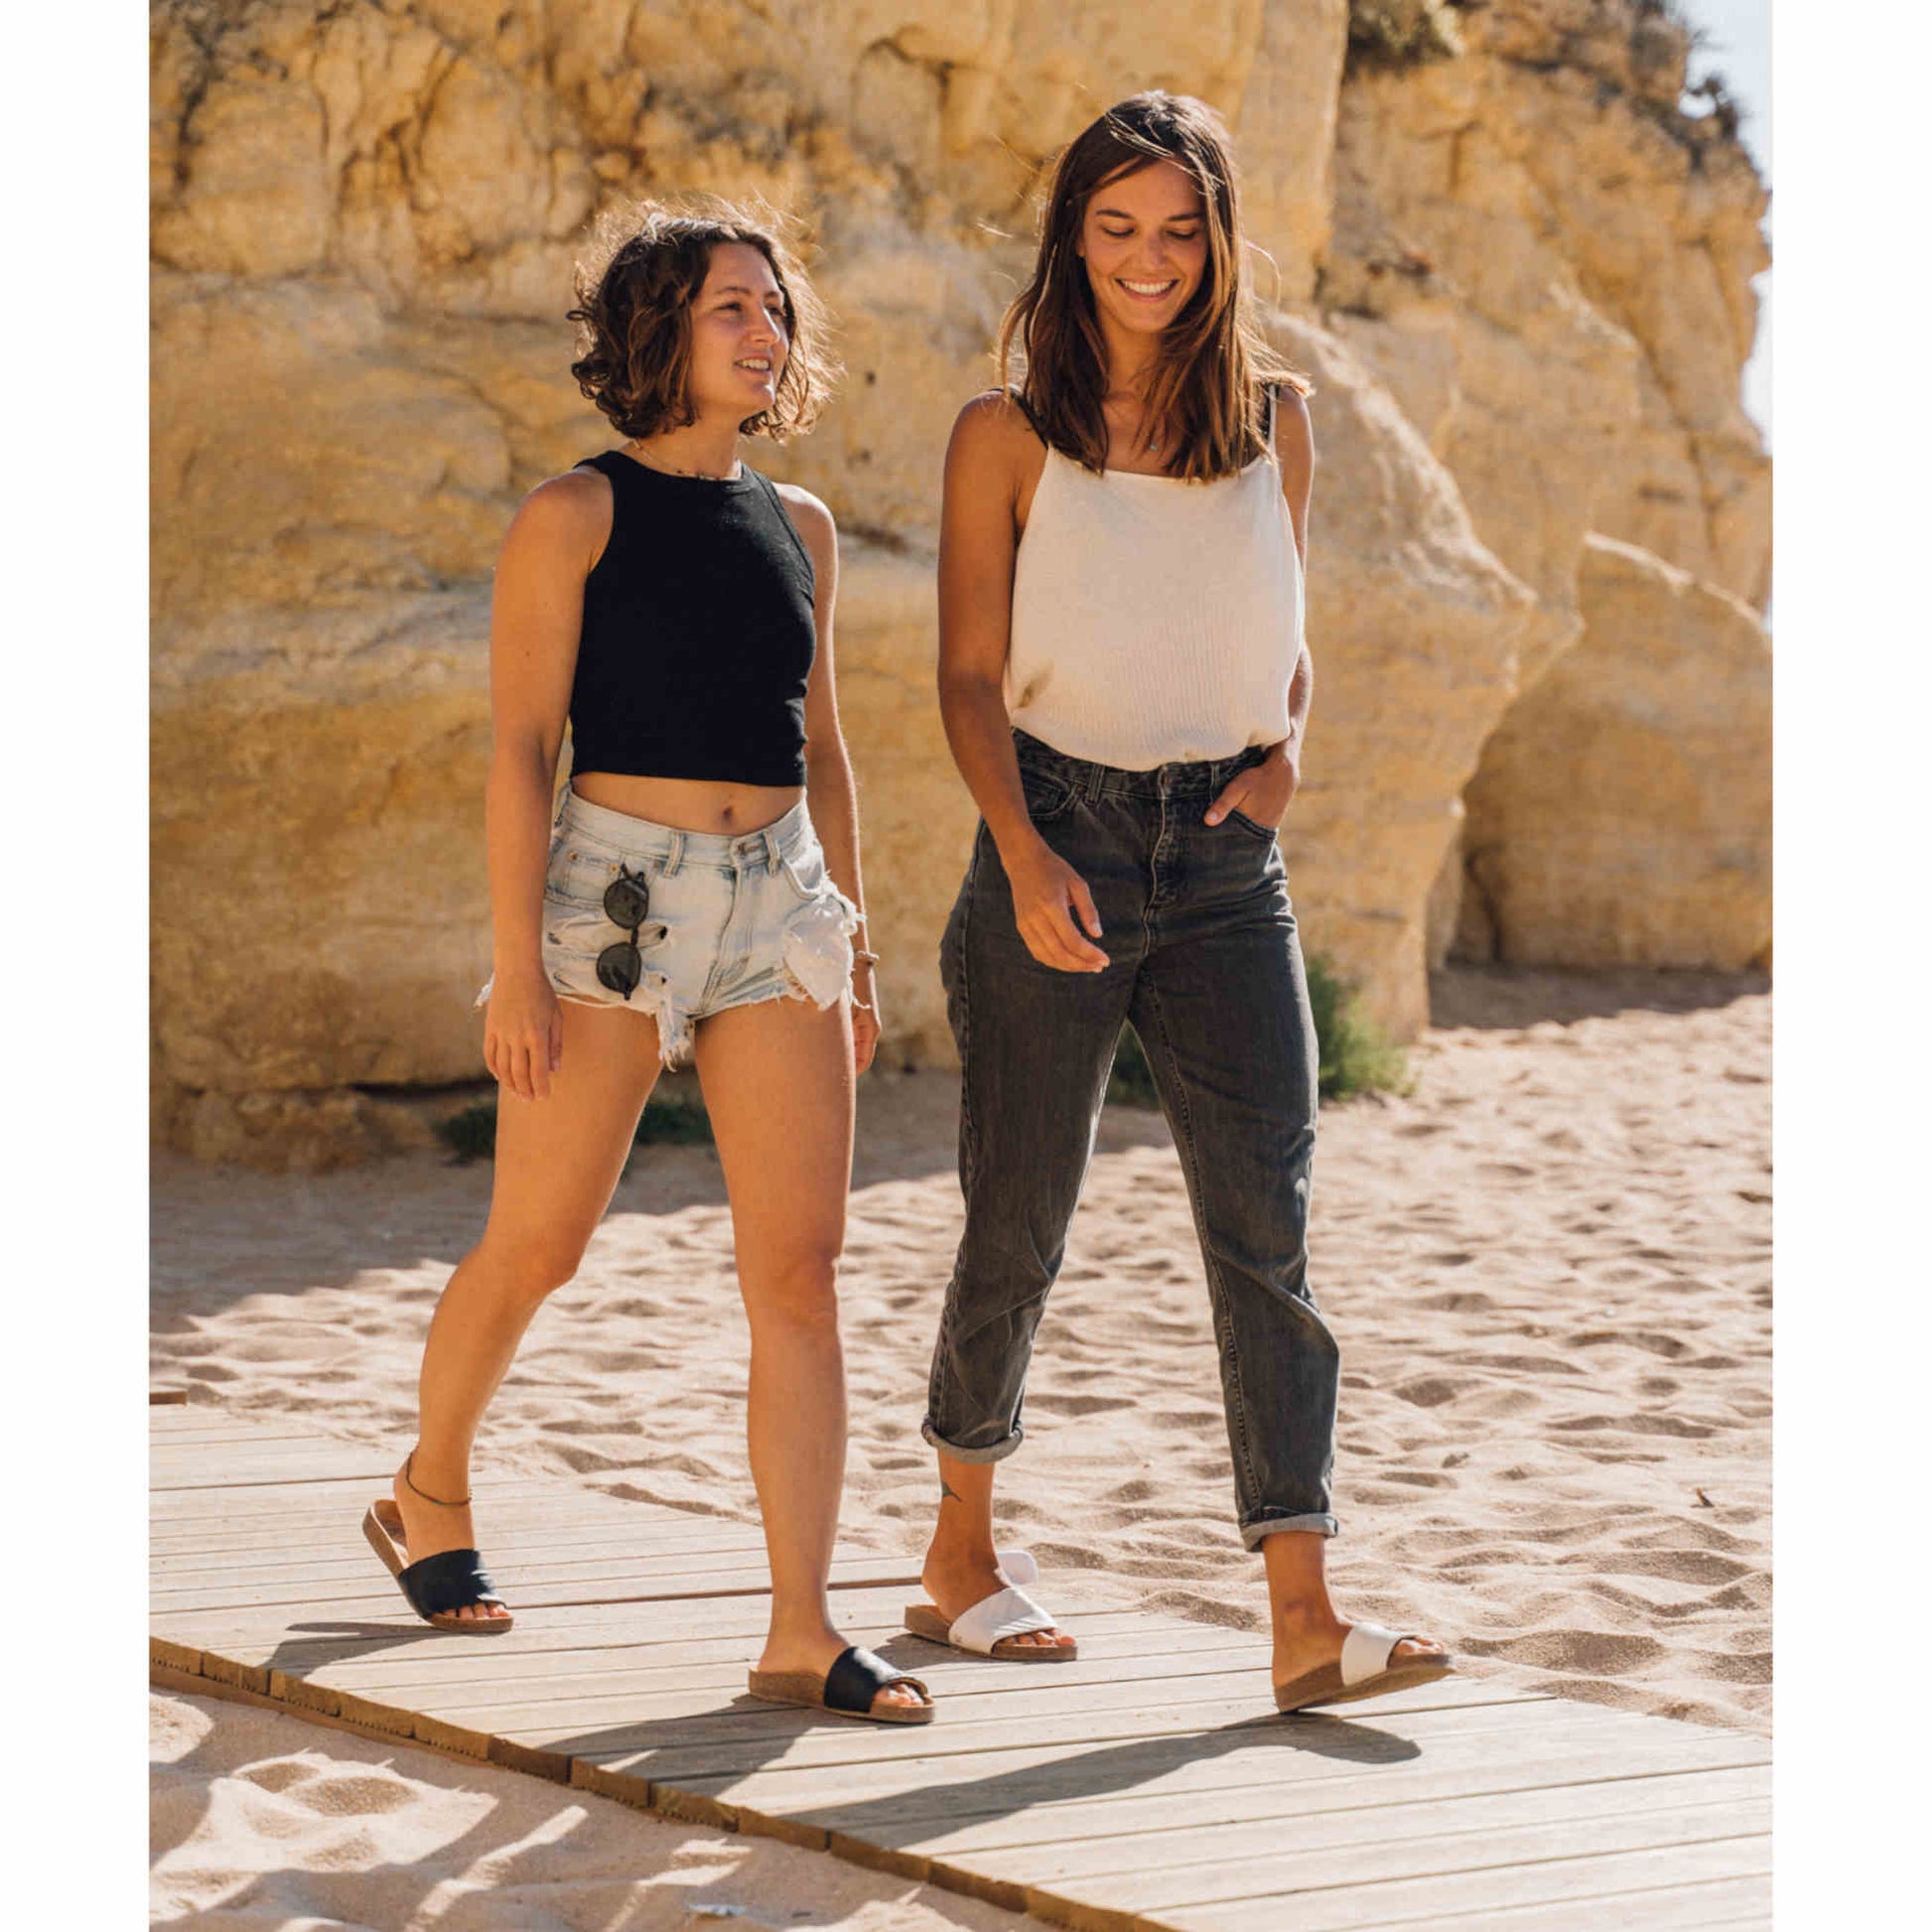 Vegane schwarze Sandalen, Marke Fünve, Modell: YIN, zwei Frauen am Strand, Marke Fünve